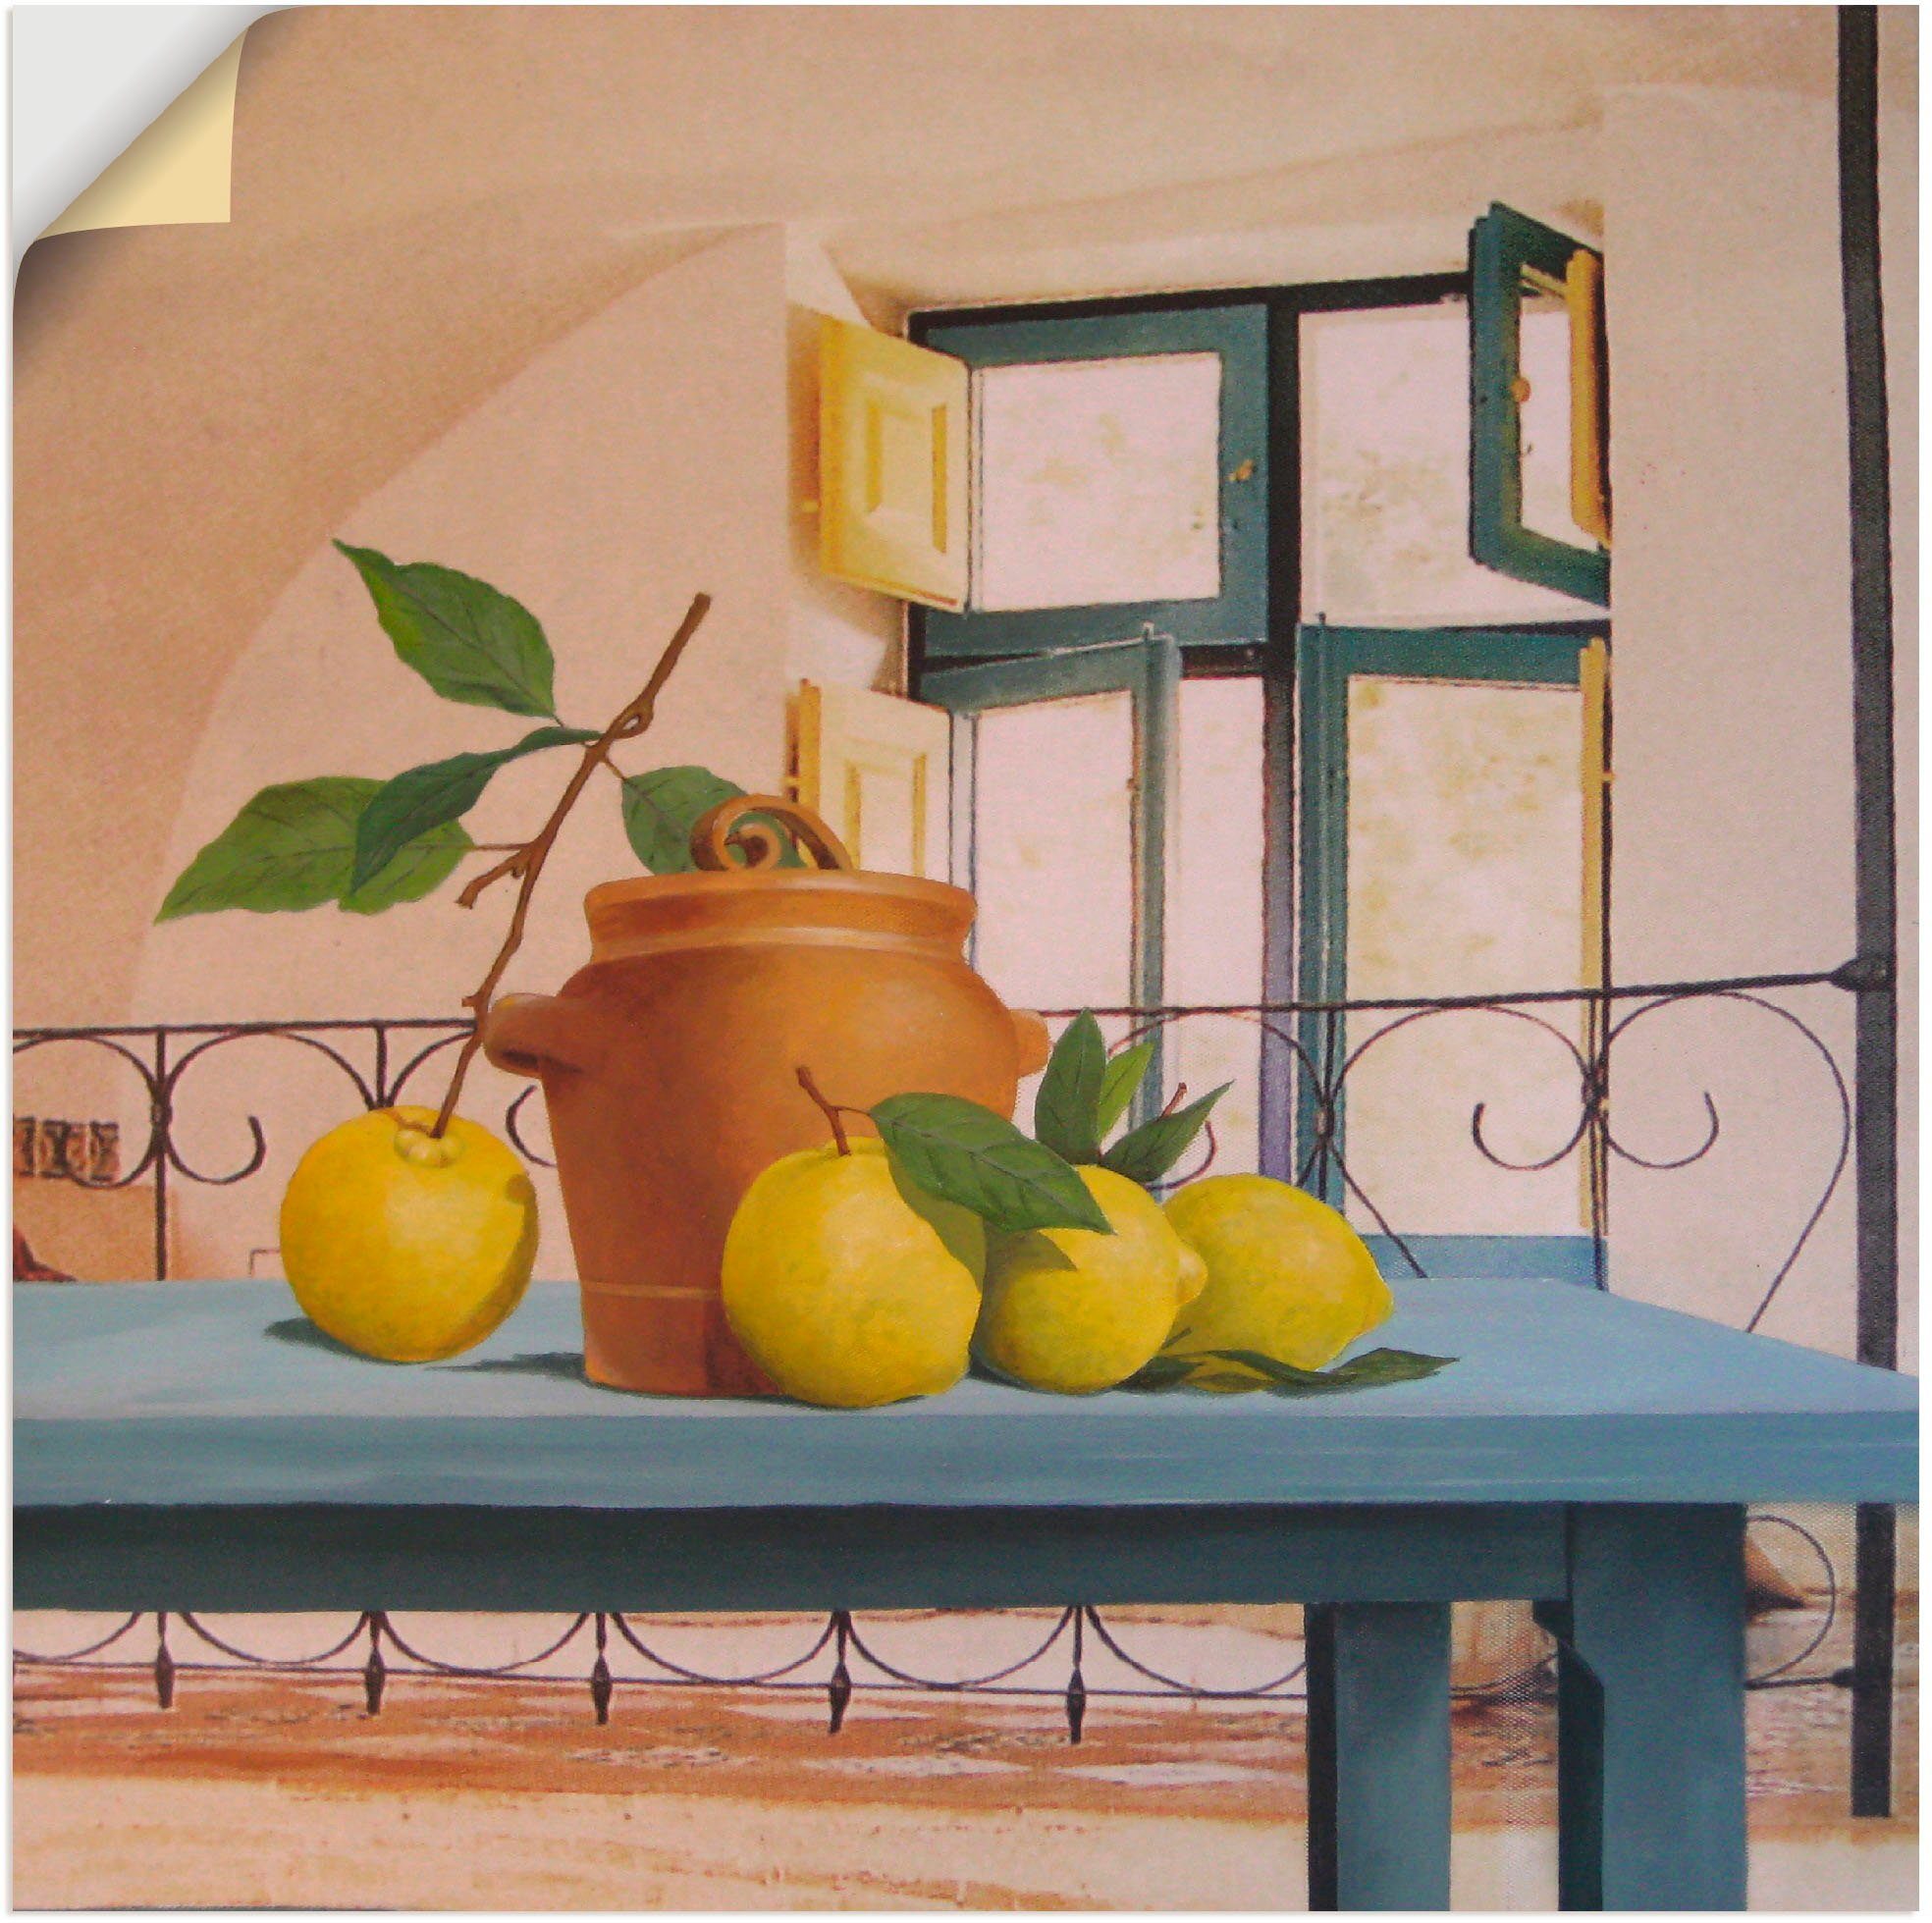 Artland Artprint Stilleven met citroenen in vele afmetingen & productsoorten -artprint op linnen, poster, muursticker / wandfolie ook geschikt voor de badkamer (1 stuk)